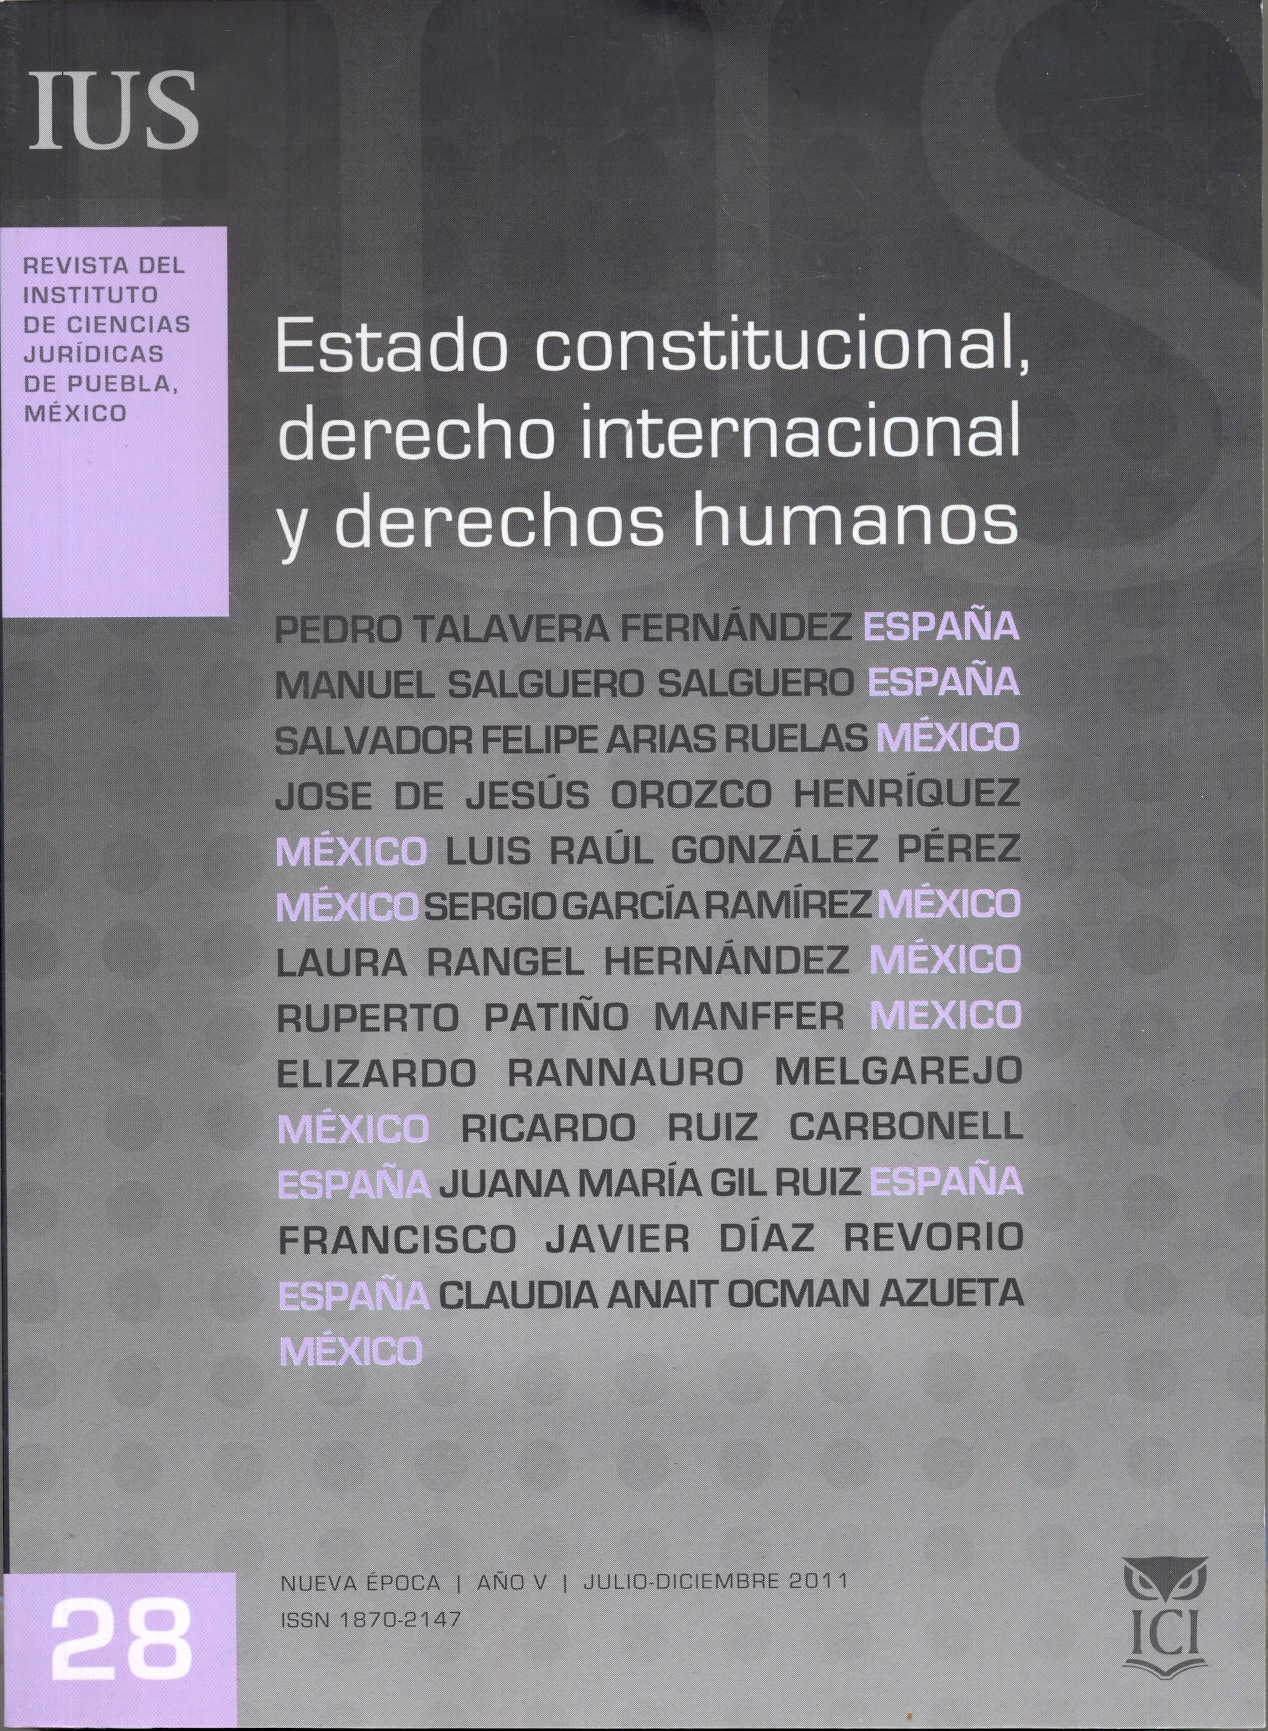 					Ver Vol. 5 Núm. 28 (2011): Estado constitucional, derecho internacional y derechos humanos
				